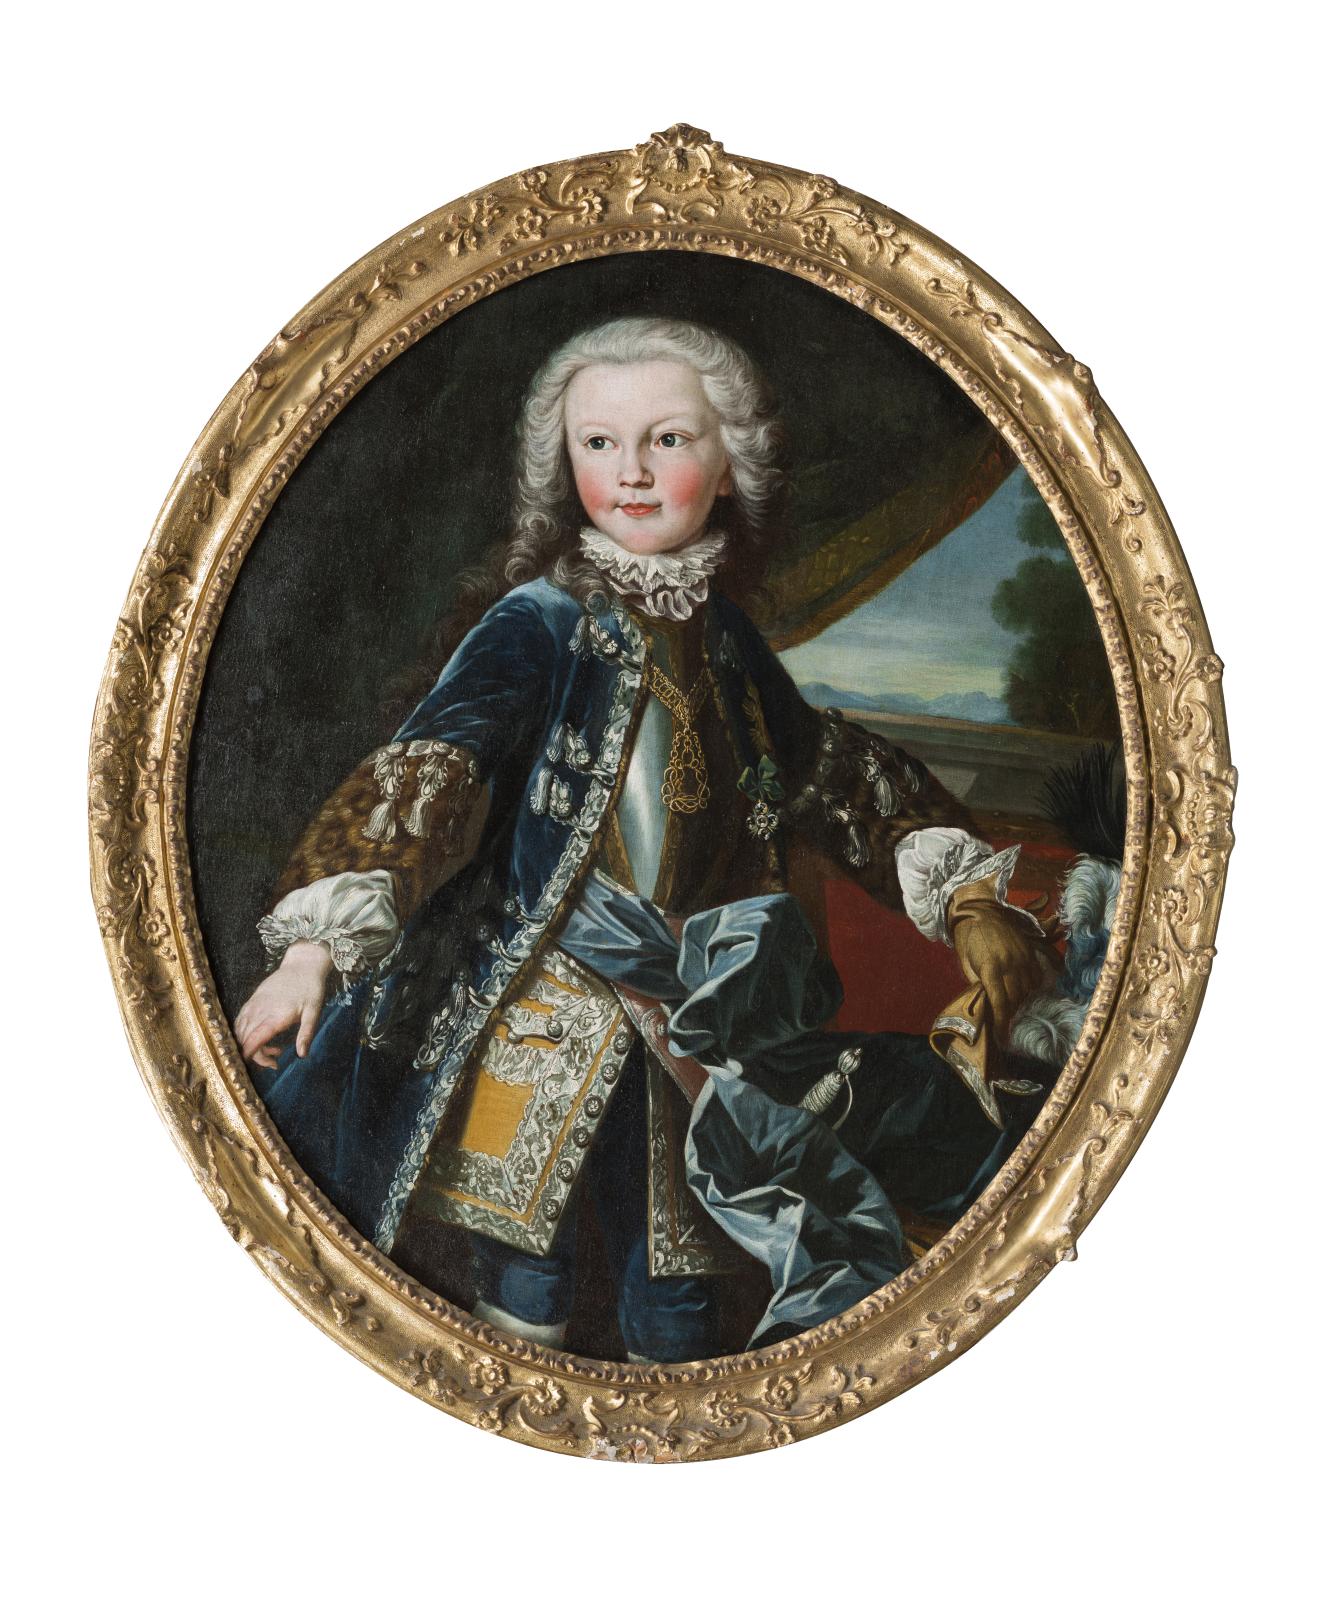 Louis-Michel Van Loo (1707-1771) et atelier, Portrait de Victor-Amédée III de Savoie (Turin 1726 - Moncalieri 1796), 1733, huile sur toile, 85 x 71 cm